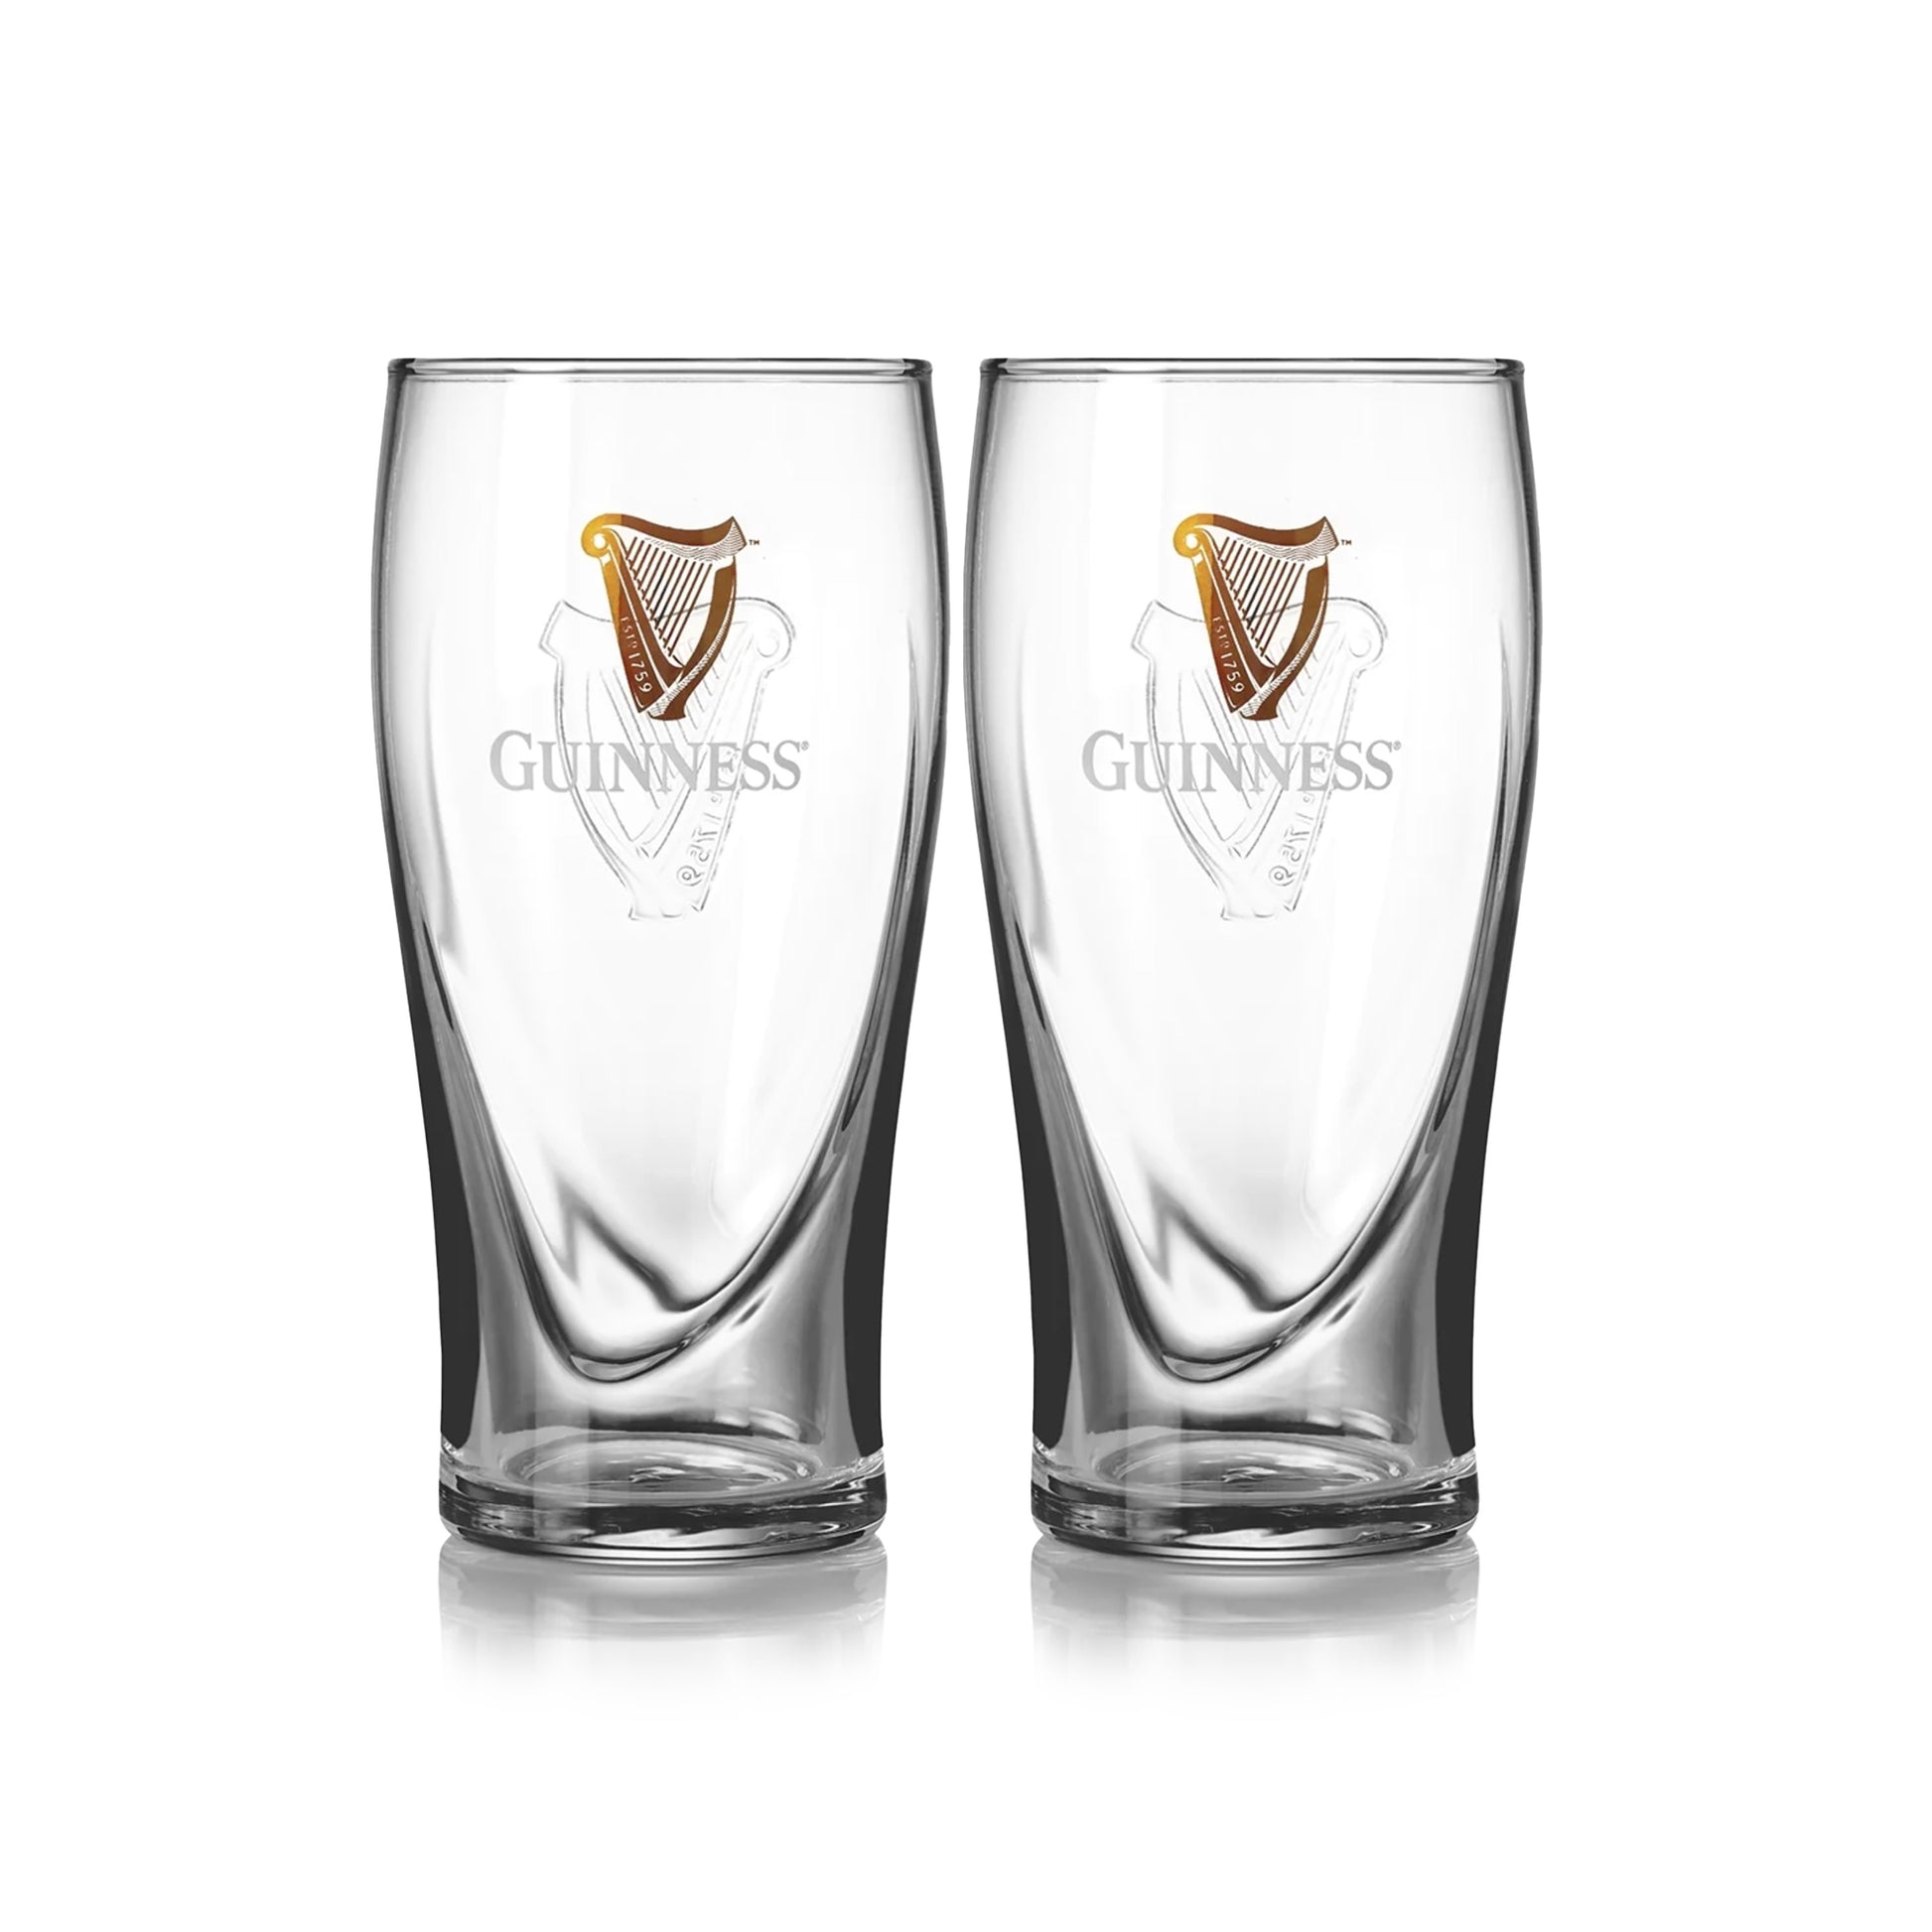 Guinness Pint Glass - 2 Pack